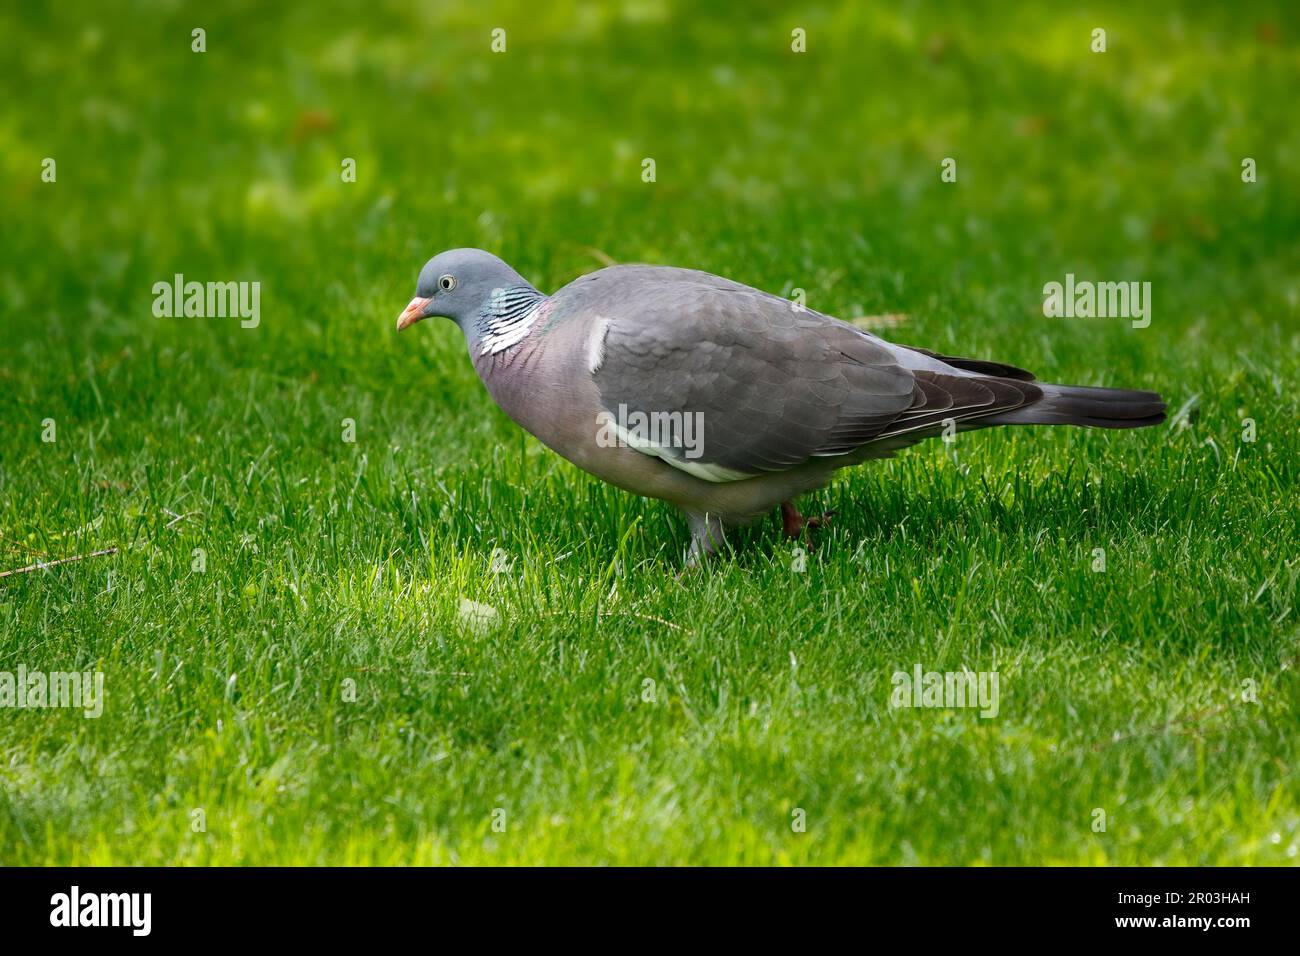 Un piccione di legno è alla ricerca di cibo nell'erba del giardino. Foto Stock